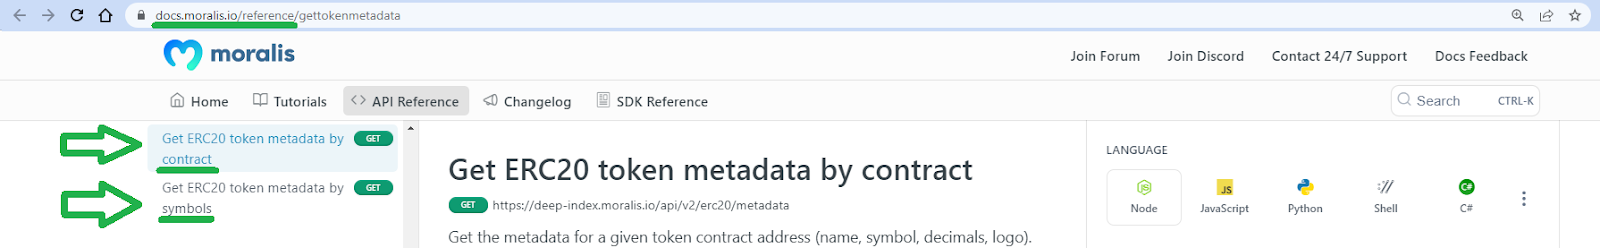 Get token metadata documentation page.